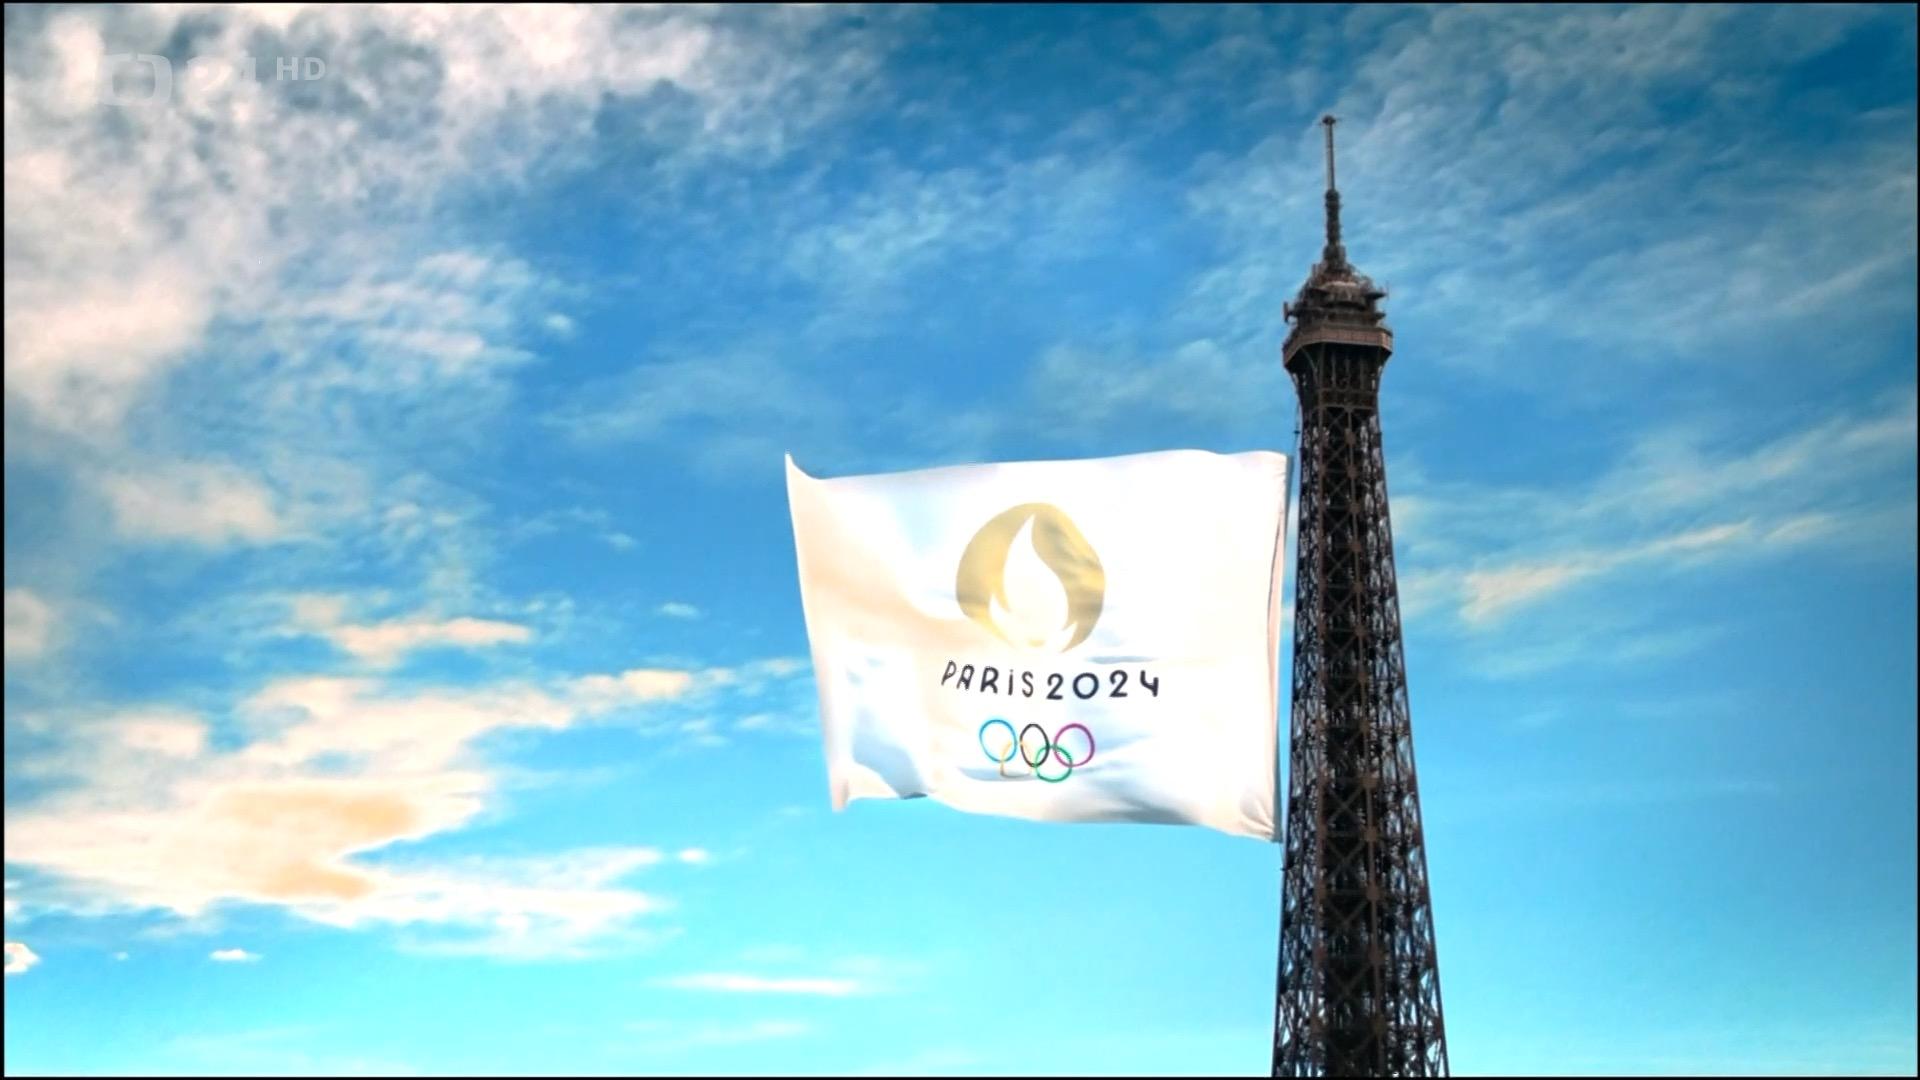 Картинки на обои 2024. Париж 2024. Олимпийская деревня в Париже 2024.